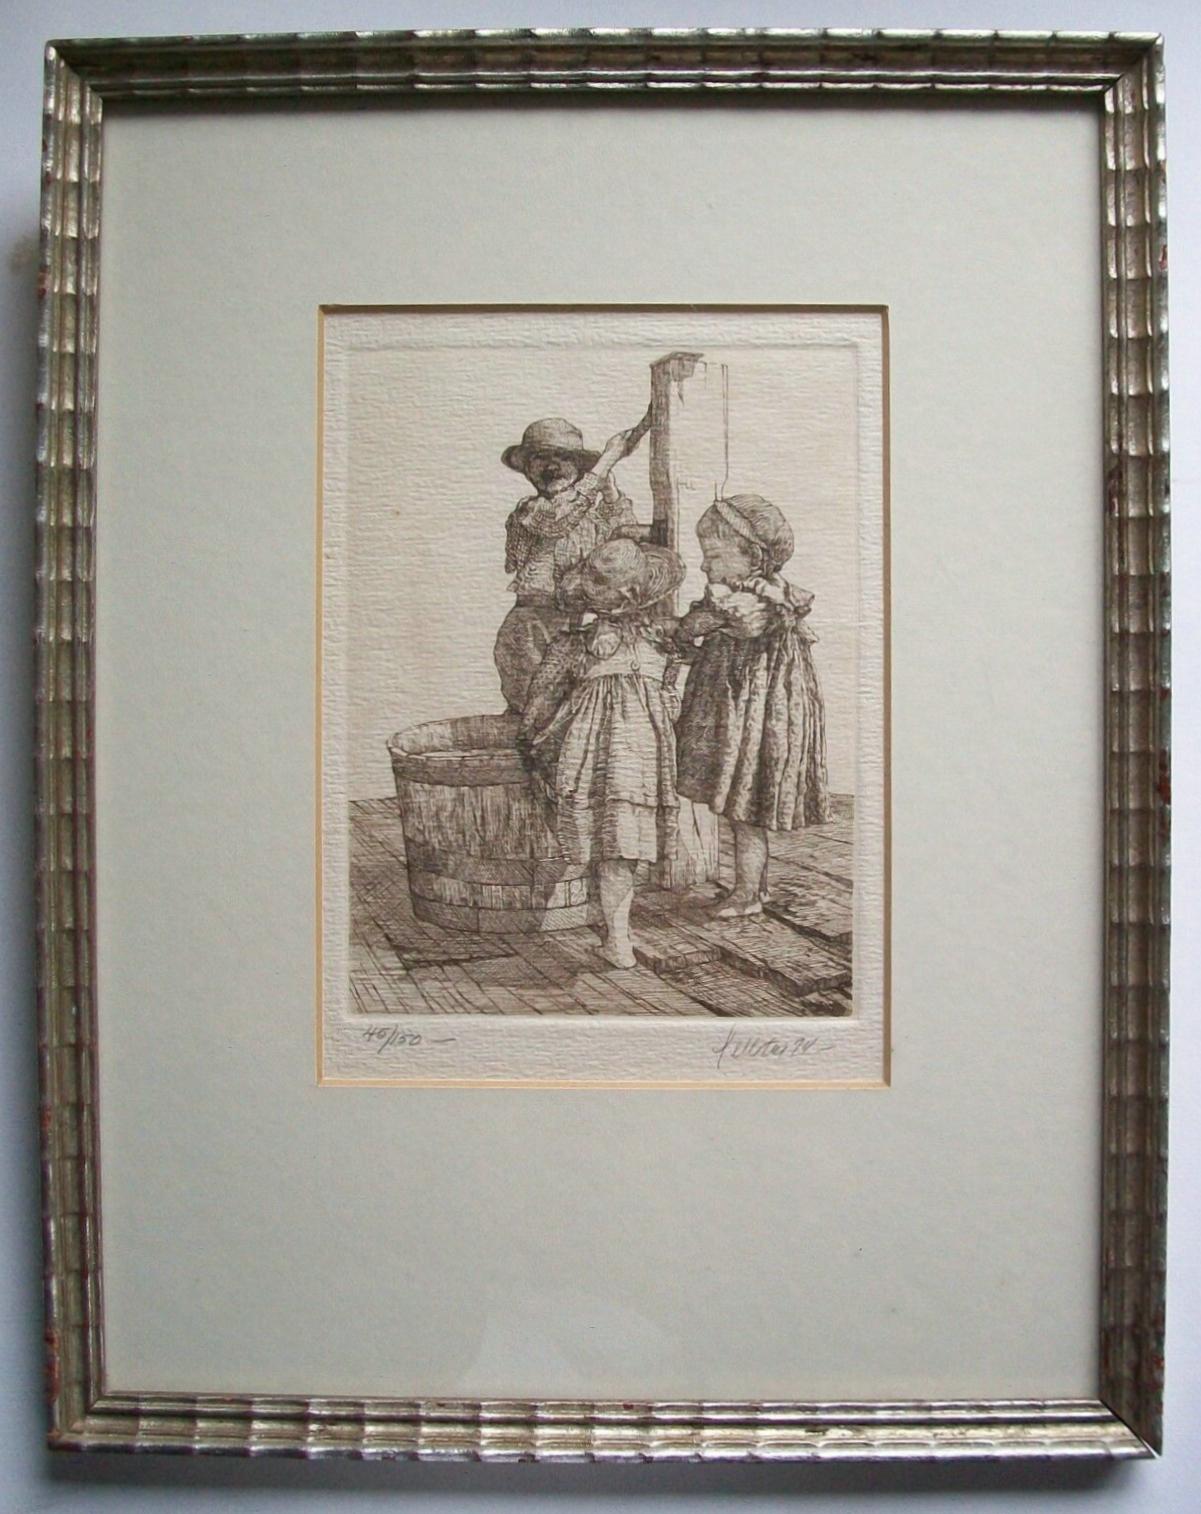 PELLETIER - 45/150 - Antiker Sepia-Stich auf Papier mit Kindern an einem Brunnen - links unten mit Bleistift nummeriert - rechts unten mit Bleistift signiert und datiert - in einem alten vergoldeten Silberrahmen mit Passepartout - Etikett der